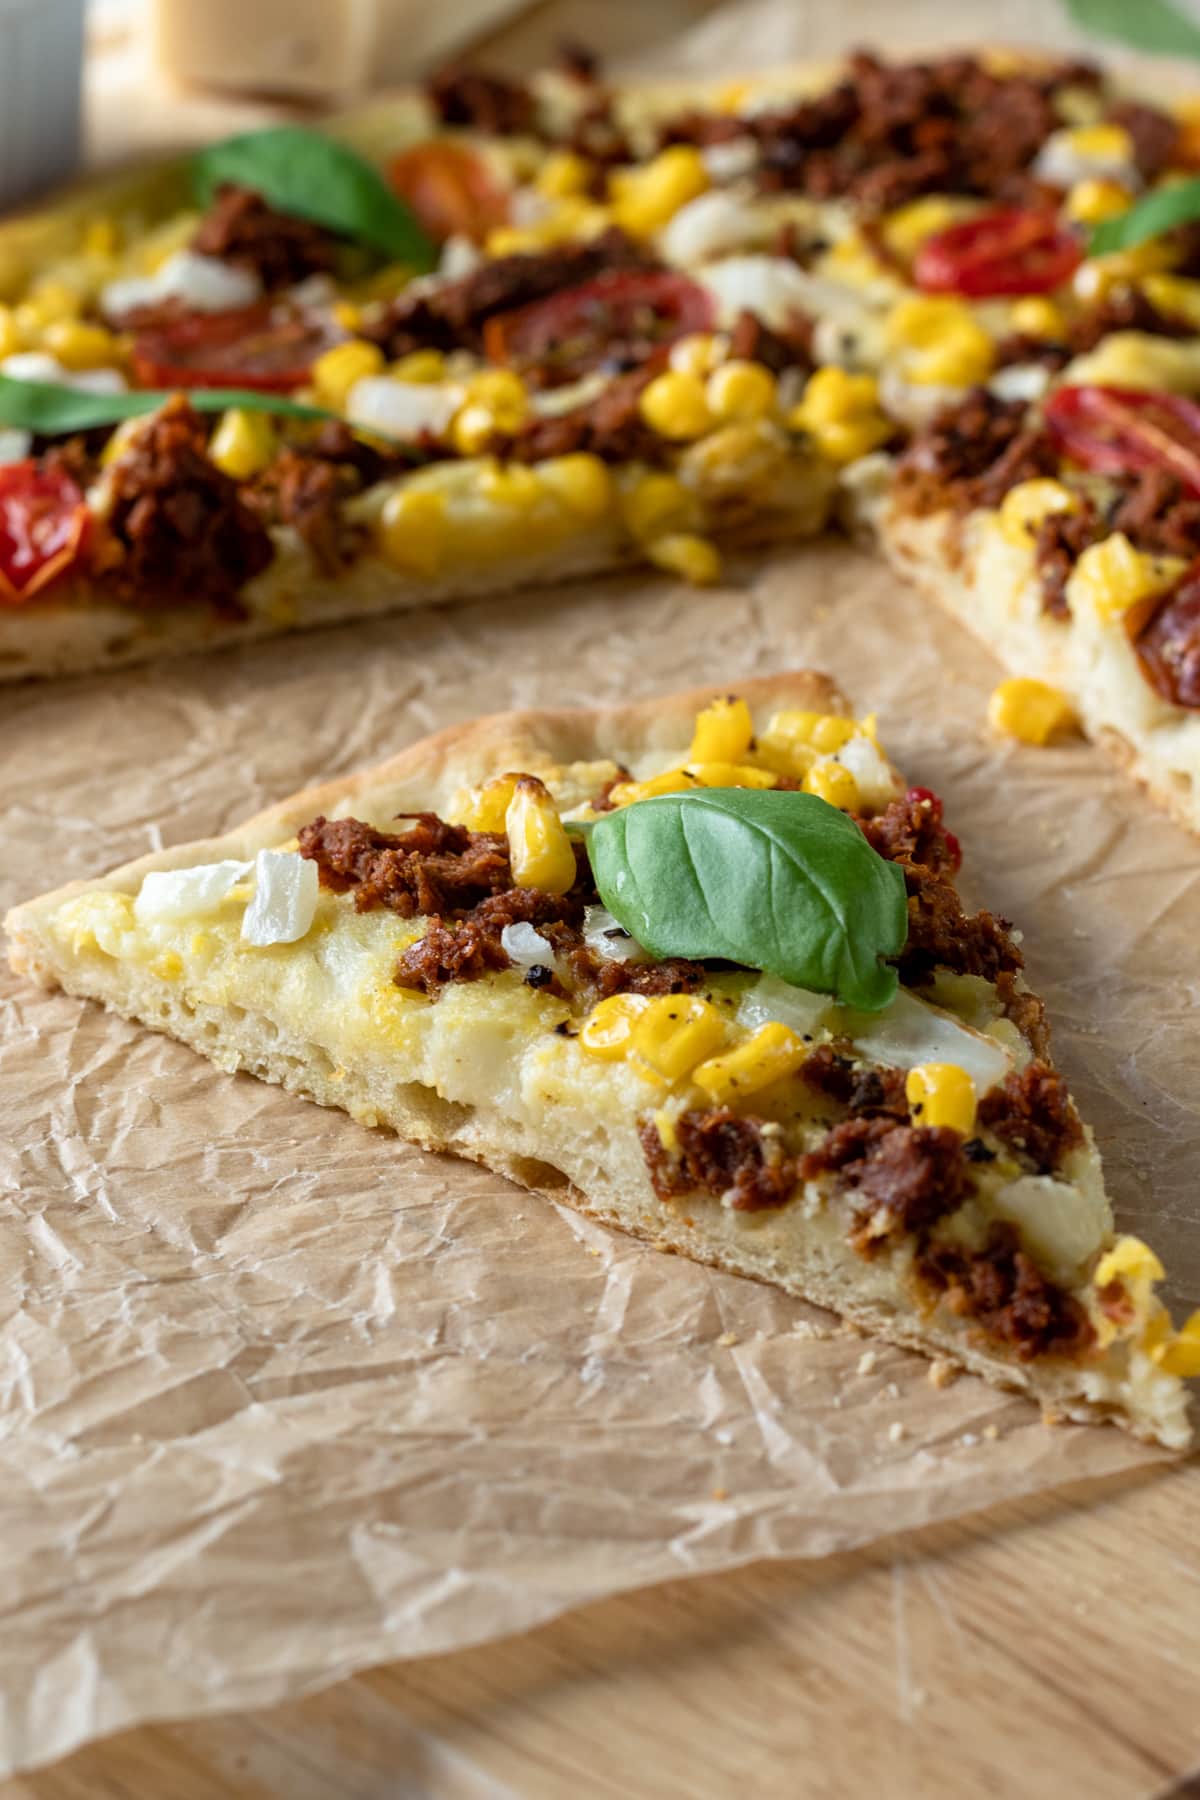 side view showing texture of crisp vegan pizza crust